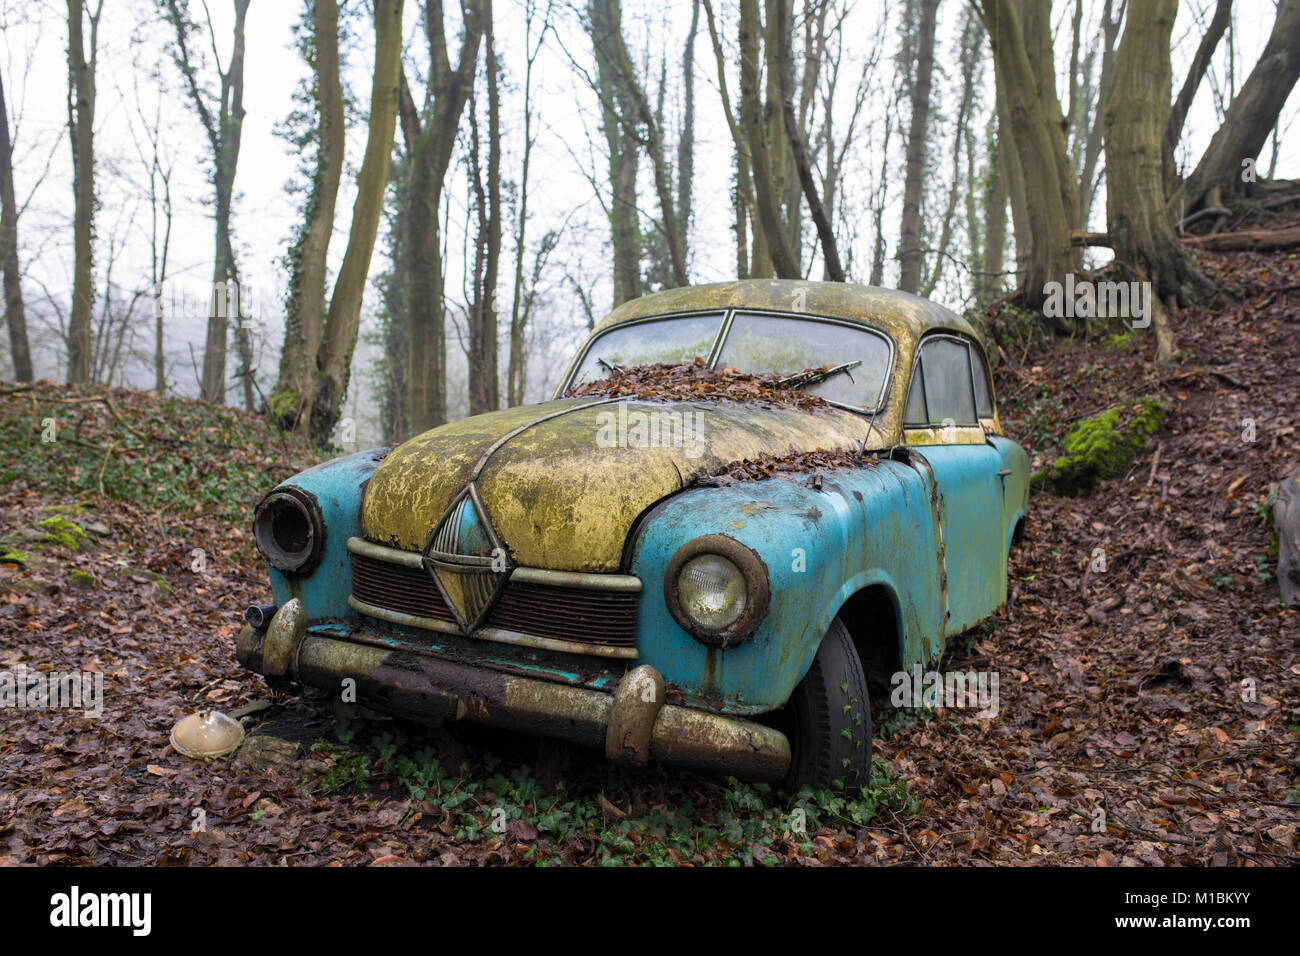 Classic vintage en décomposition carcasse de voiture dans une forêt en automne Banque D'Images